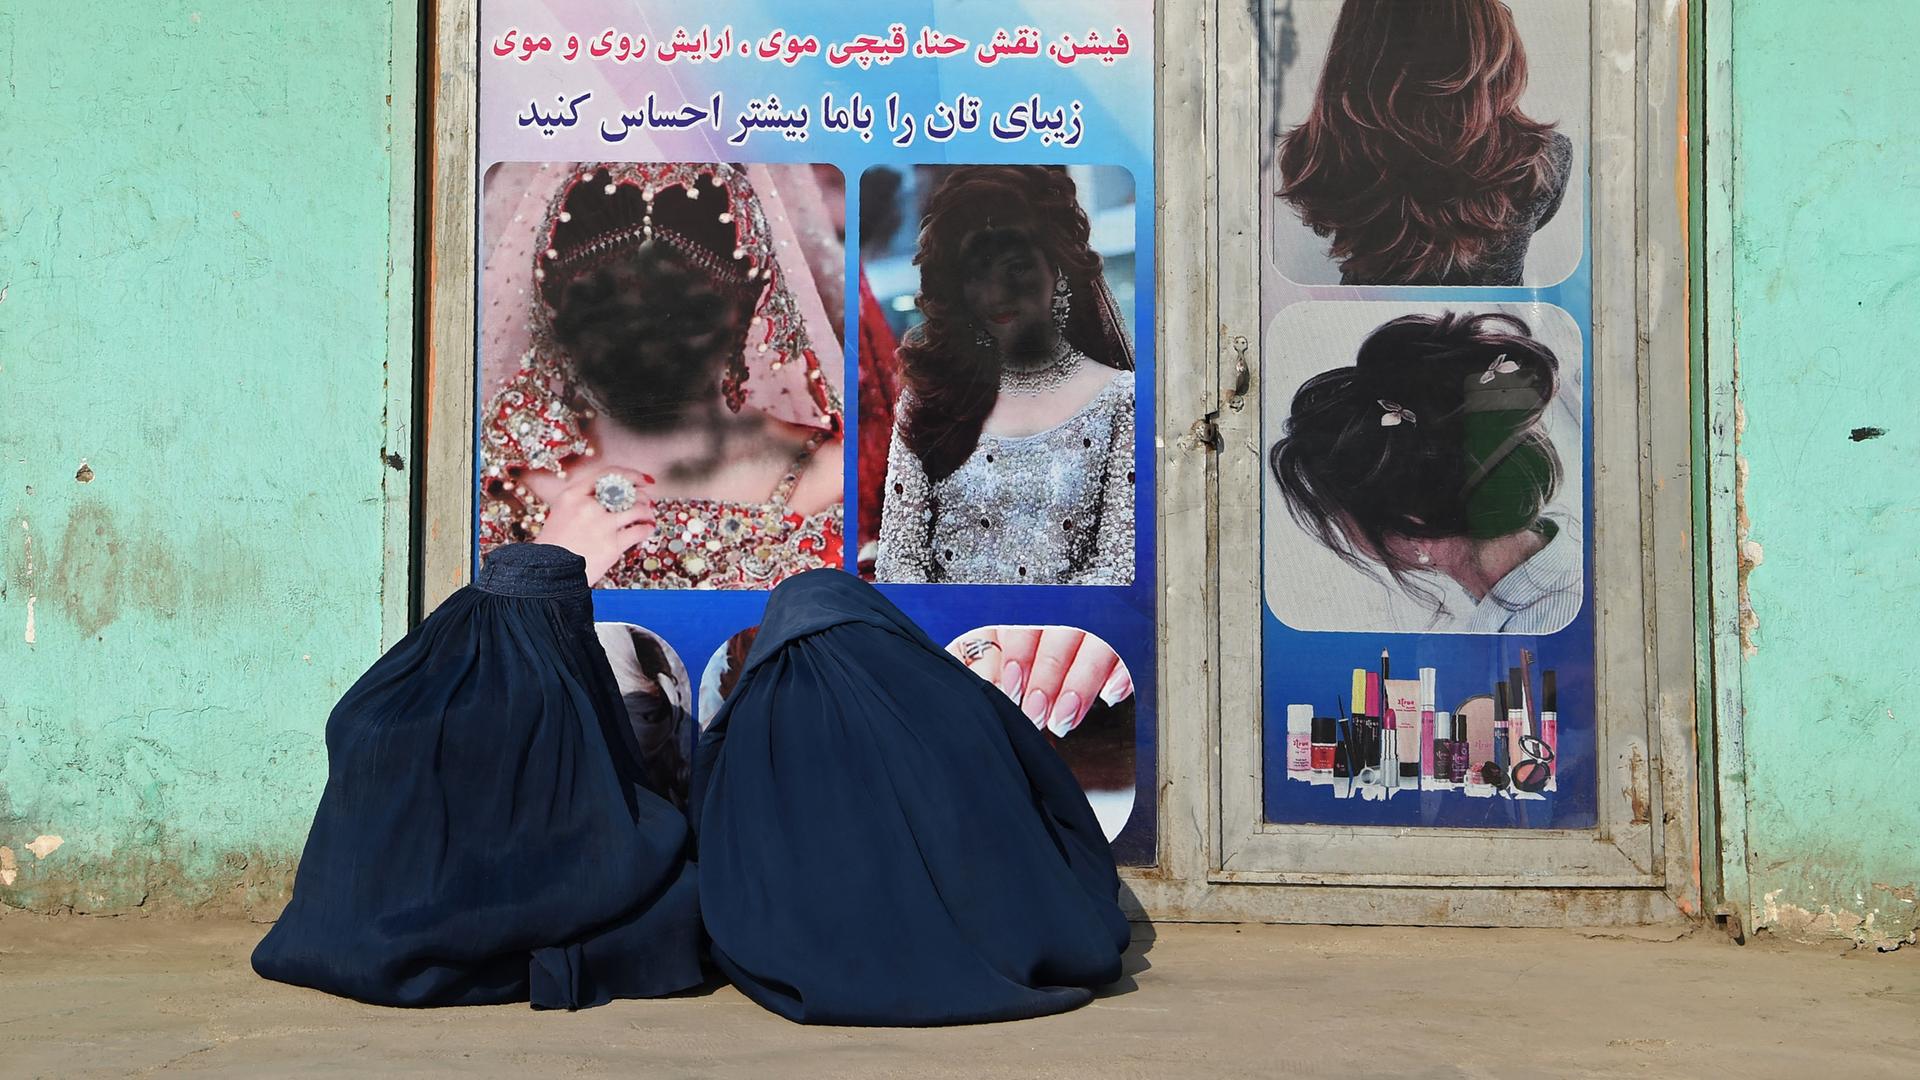 Zwei afghanische Frauen, in Burkas verhüllt, sitzen vor einem geschlossenen Schönheitssalon. Die Frauengesichter im Schaufenster sind mit schwarzer Farbe übersprüht worden. Jalalabad, 13.1. 2021.